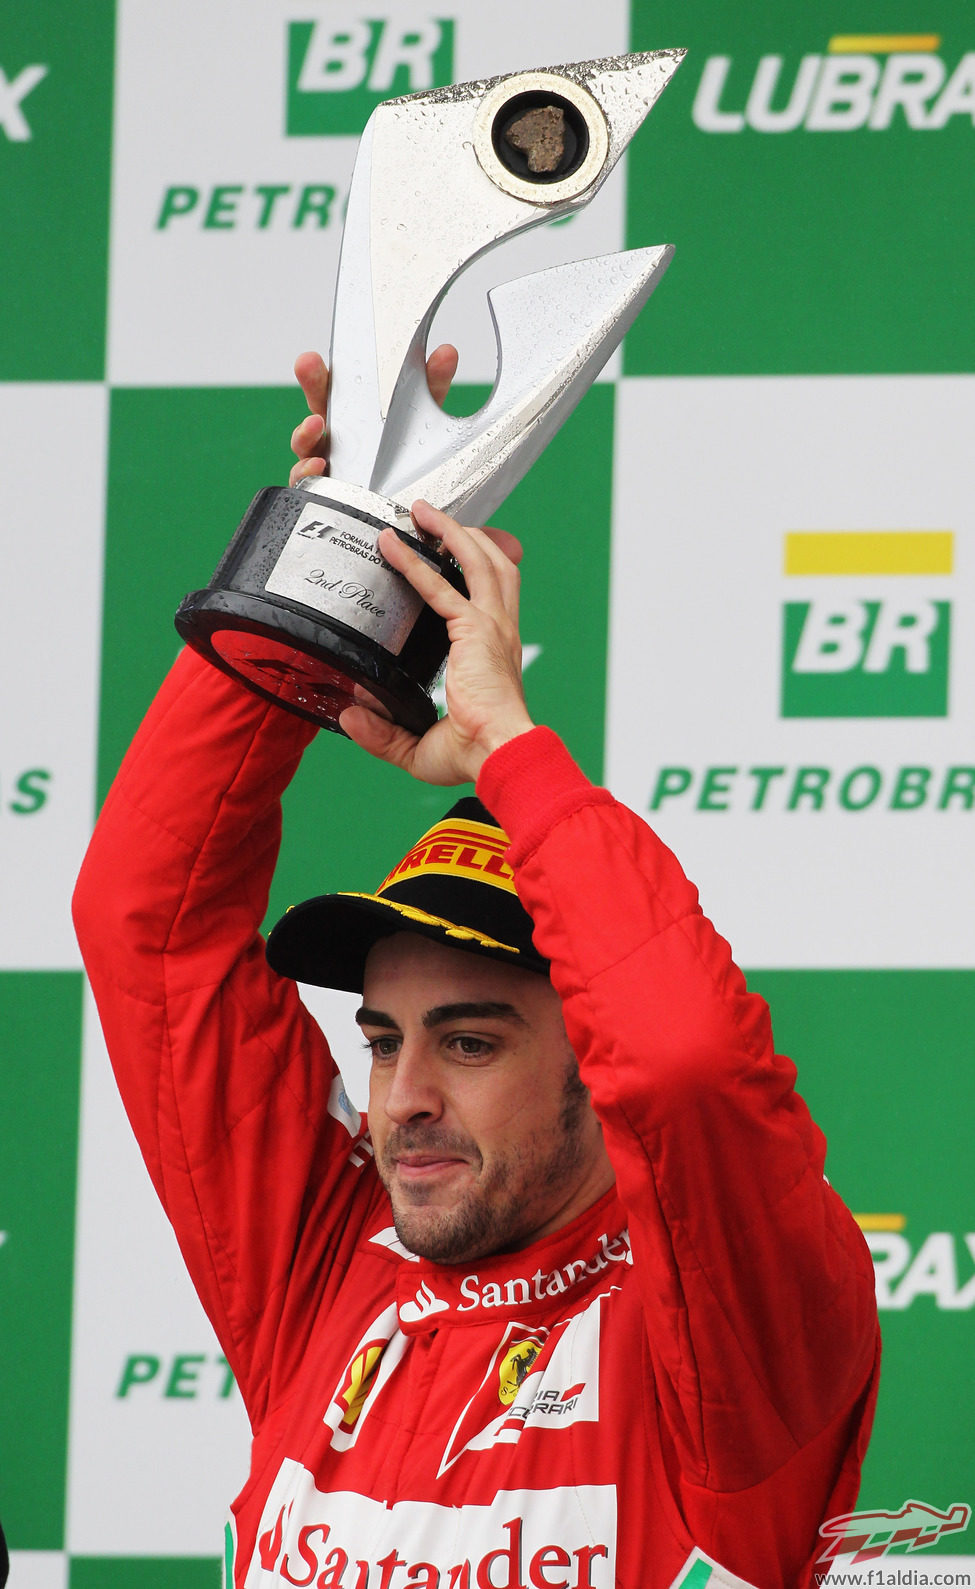 Fernando Alonso levanta su trofeo de segundo en el GP de Brasil 2012